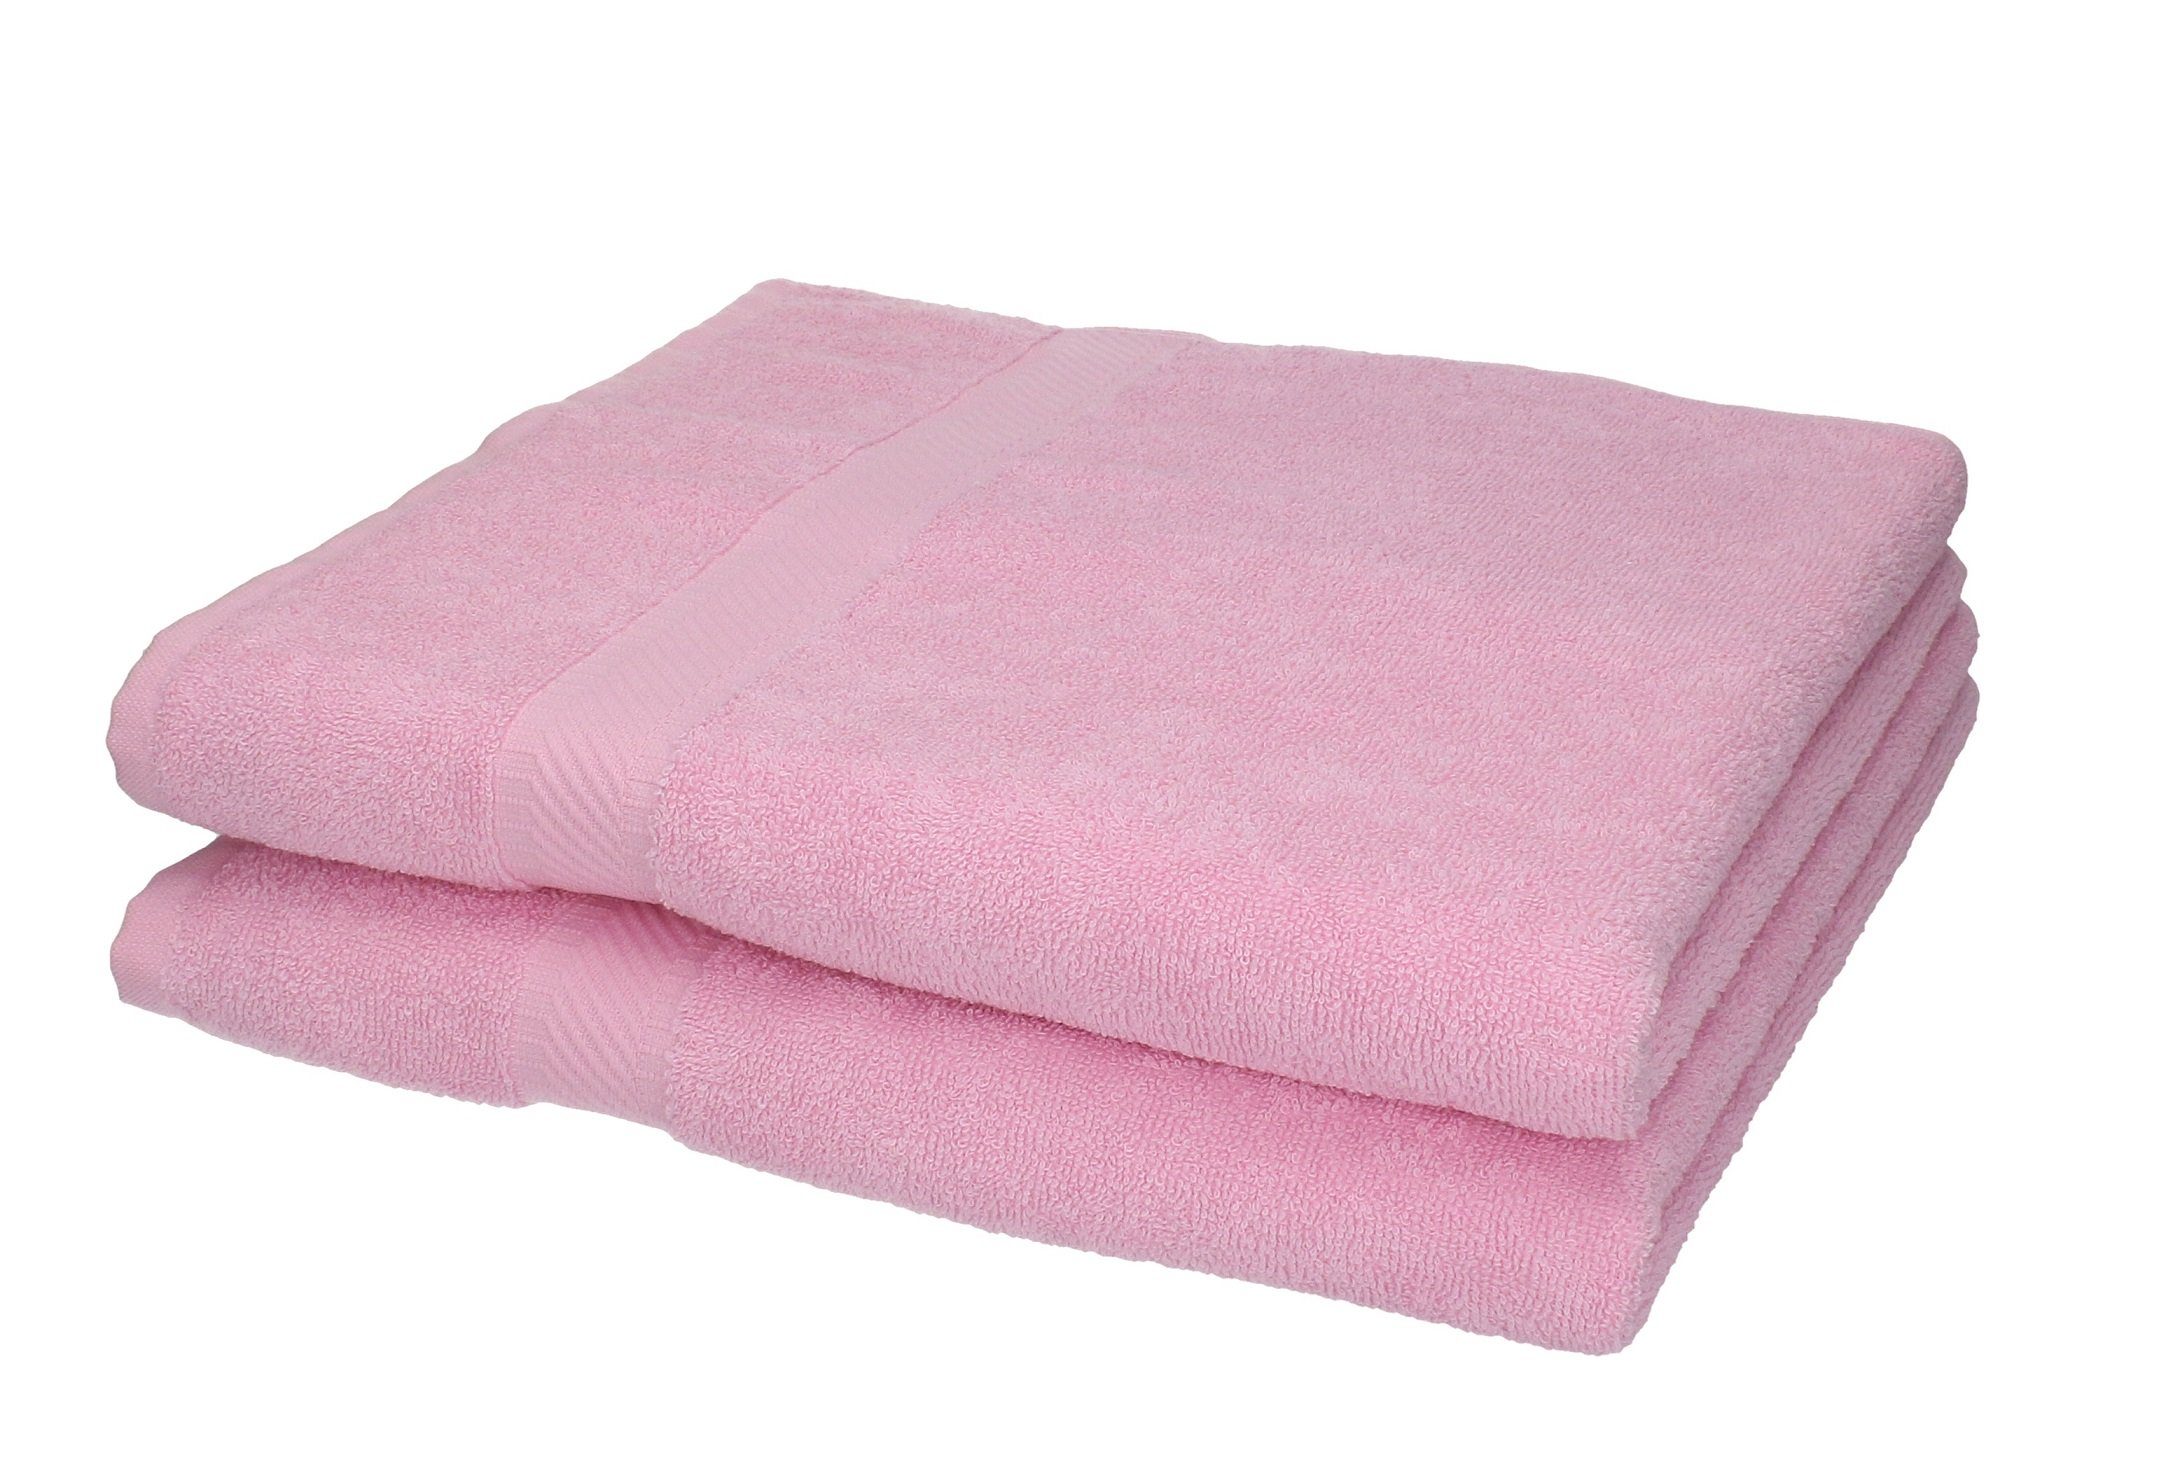 Betz Duschtücher 2 Stück Duschtücher Duschtuch-Set Palermo 70 x 140 cm  Farbe rosé, 100% Baumwolle | Alle Handtücher